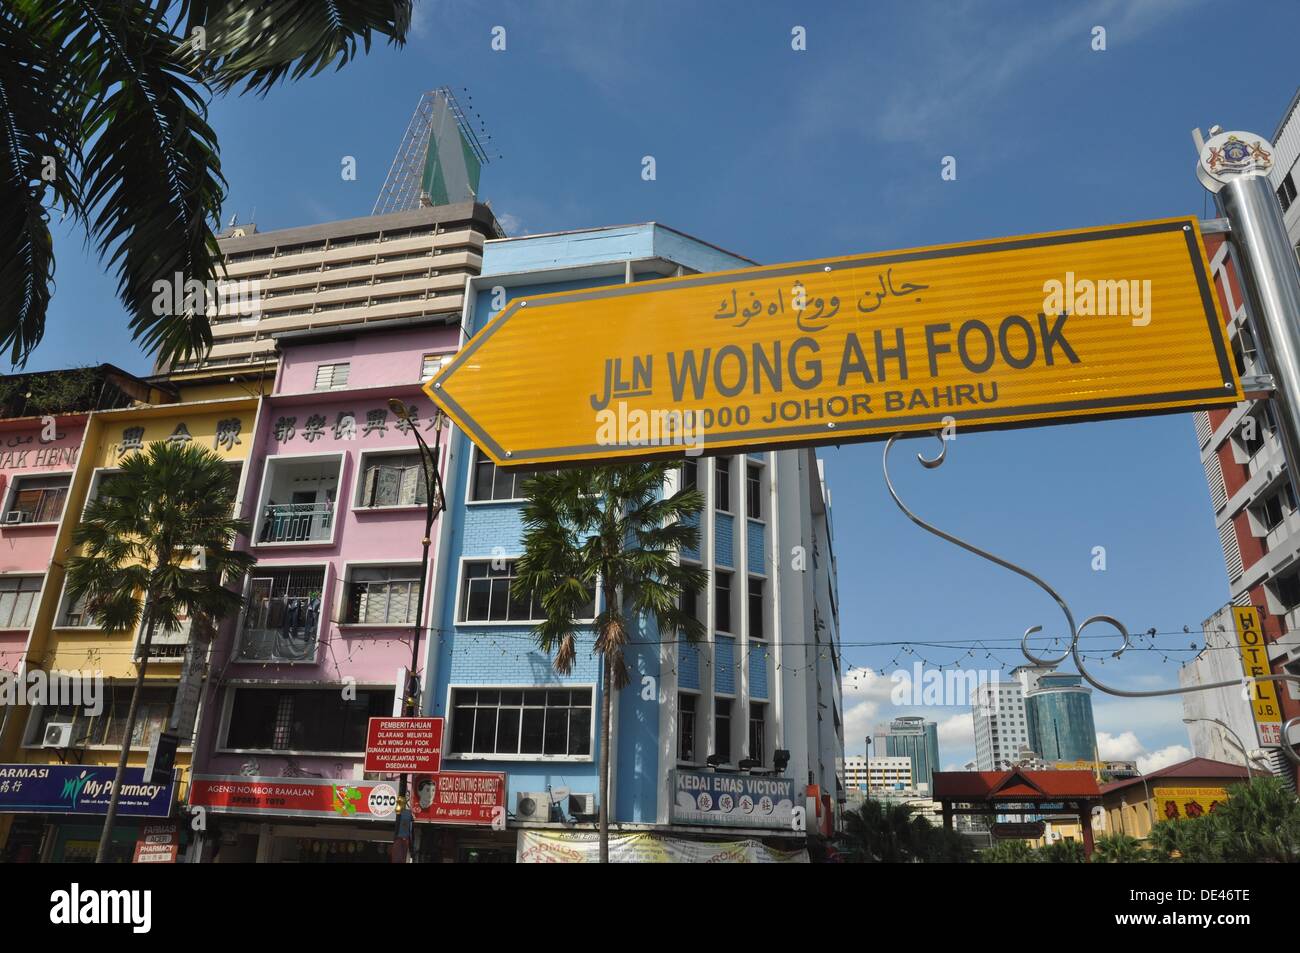 Johor Bahru (Malaysia): buildings along Jalan Wong Ah Fook Stock Photo